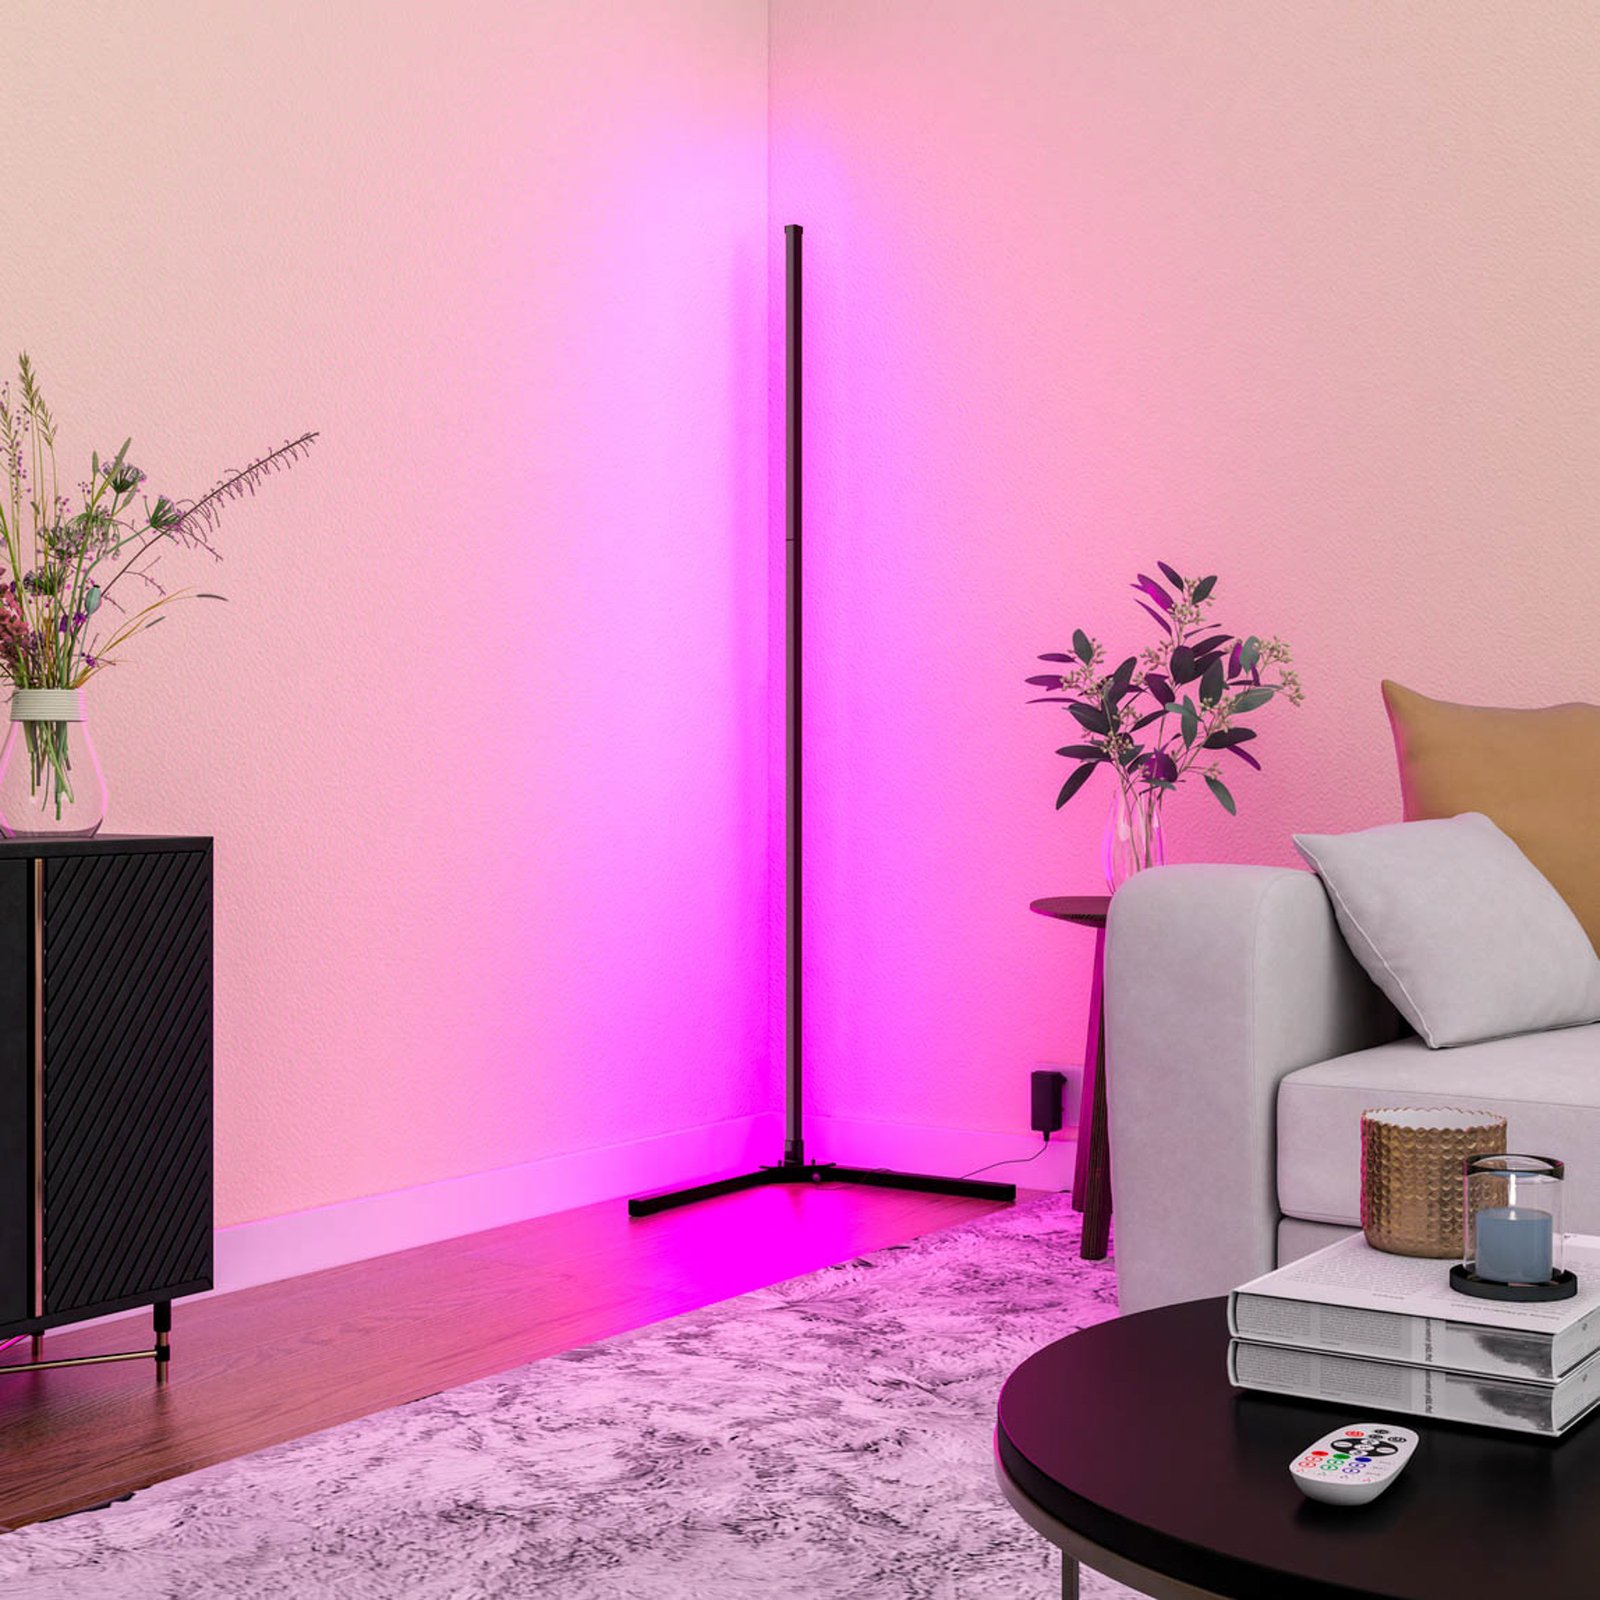 Calex Smart piantana LED con telecomando RGBW